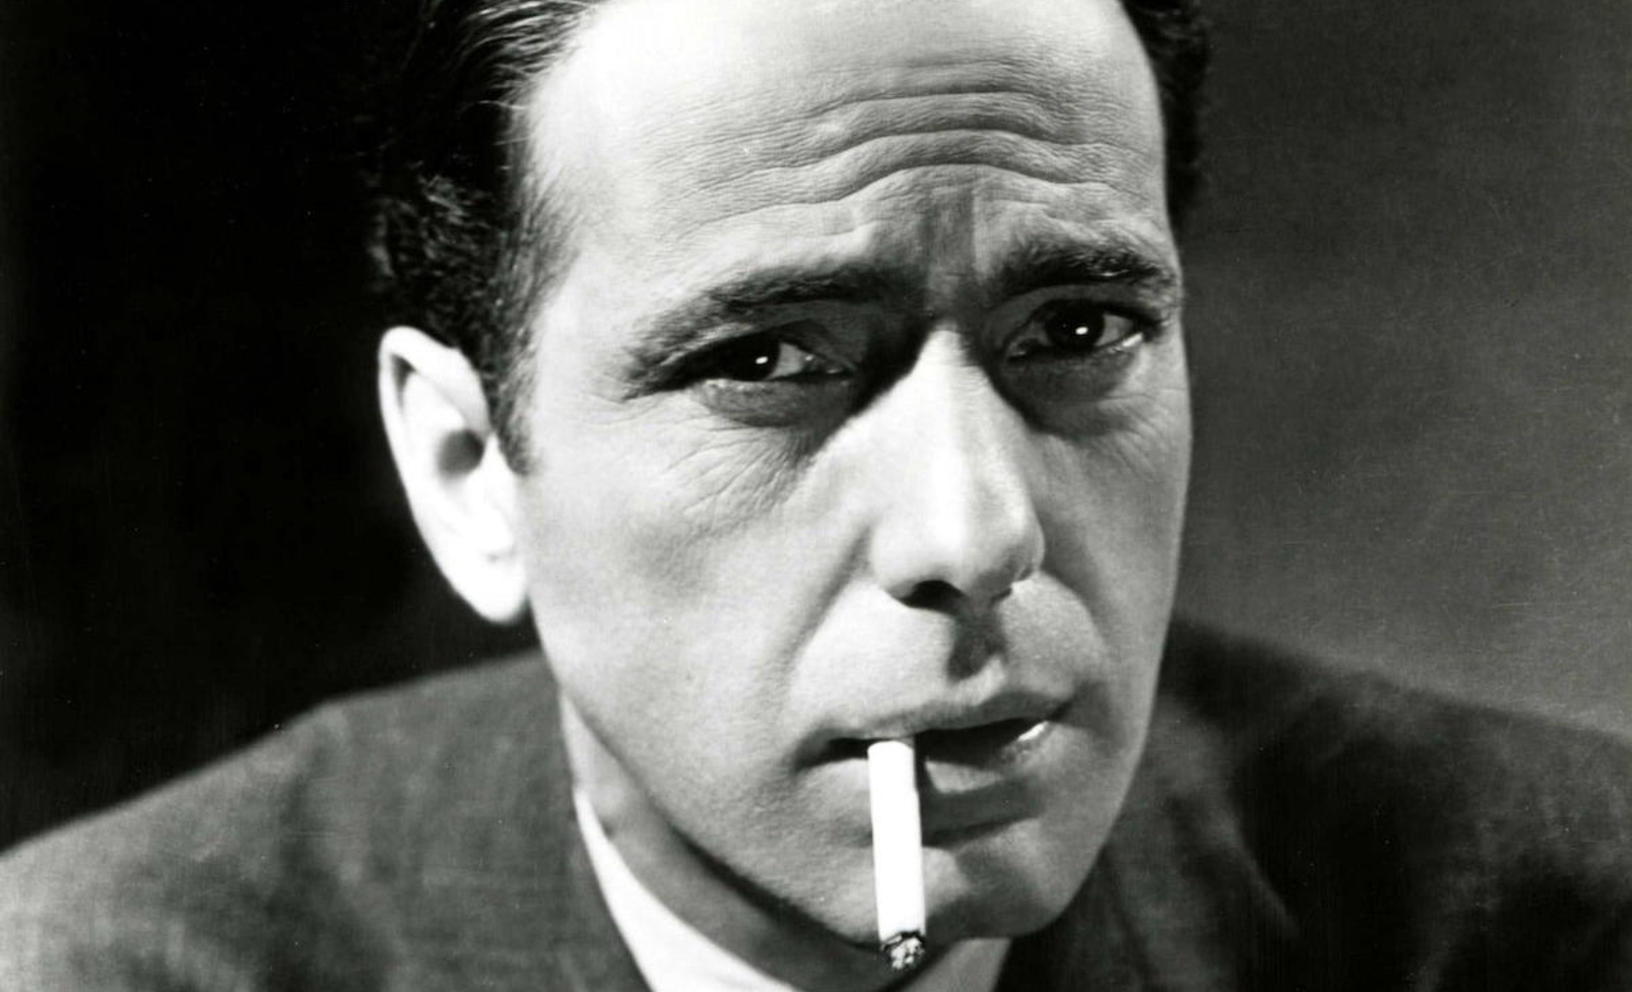 # Хамфри Богарт: Какие странные вещи уносят с собой на тот свет?